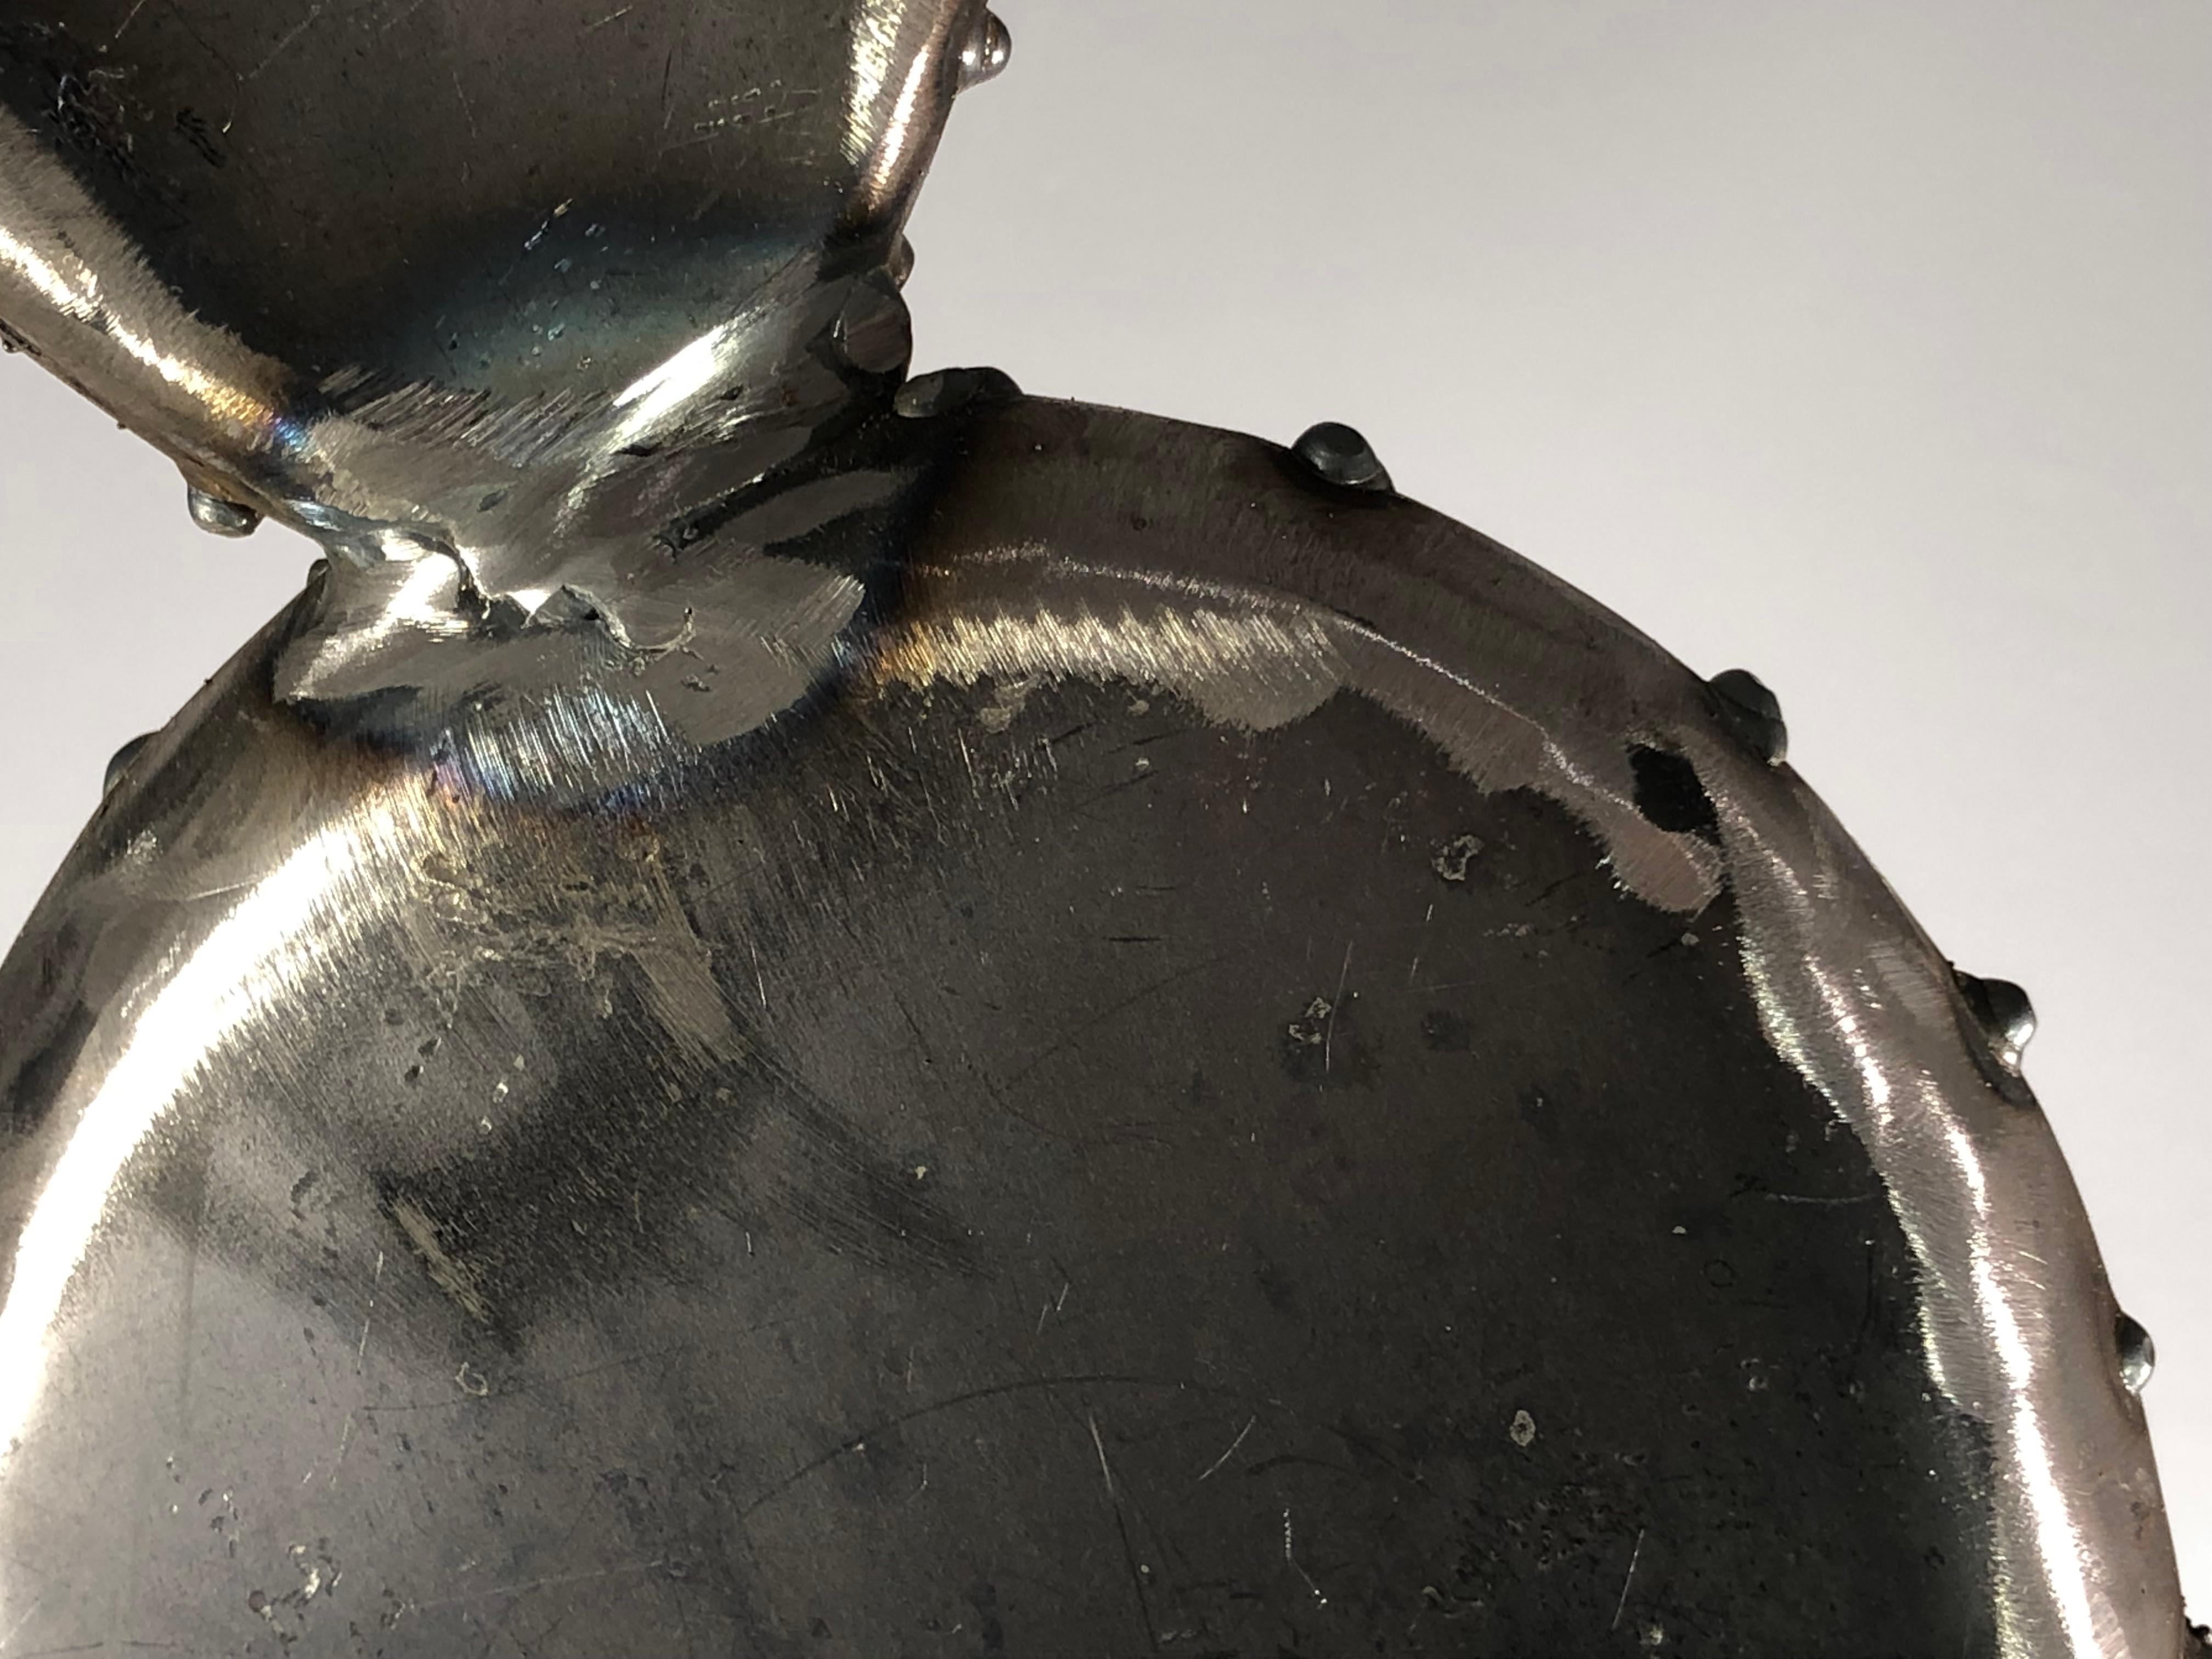 A Metal CACTUS Contemporary SCULPTURE BRUTALIST Unique PIECE by ESOJ France 2020 For Sale 4